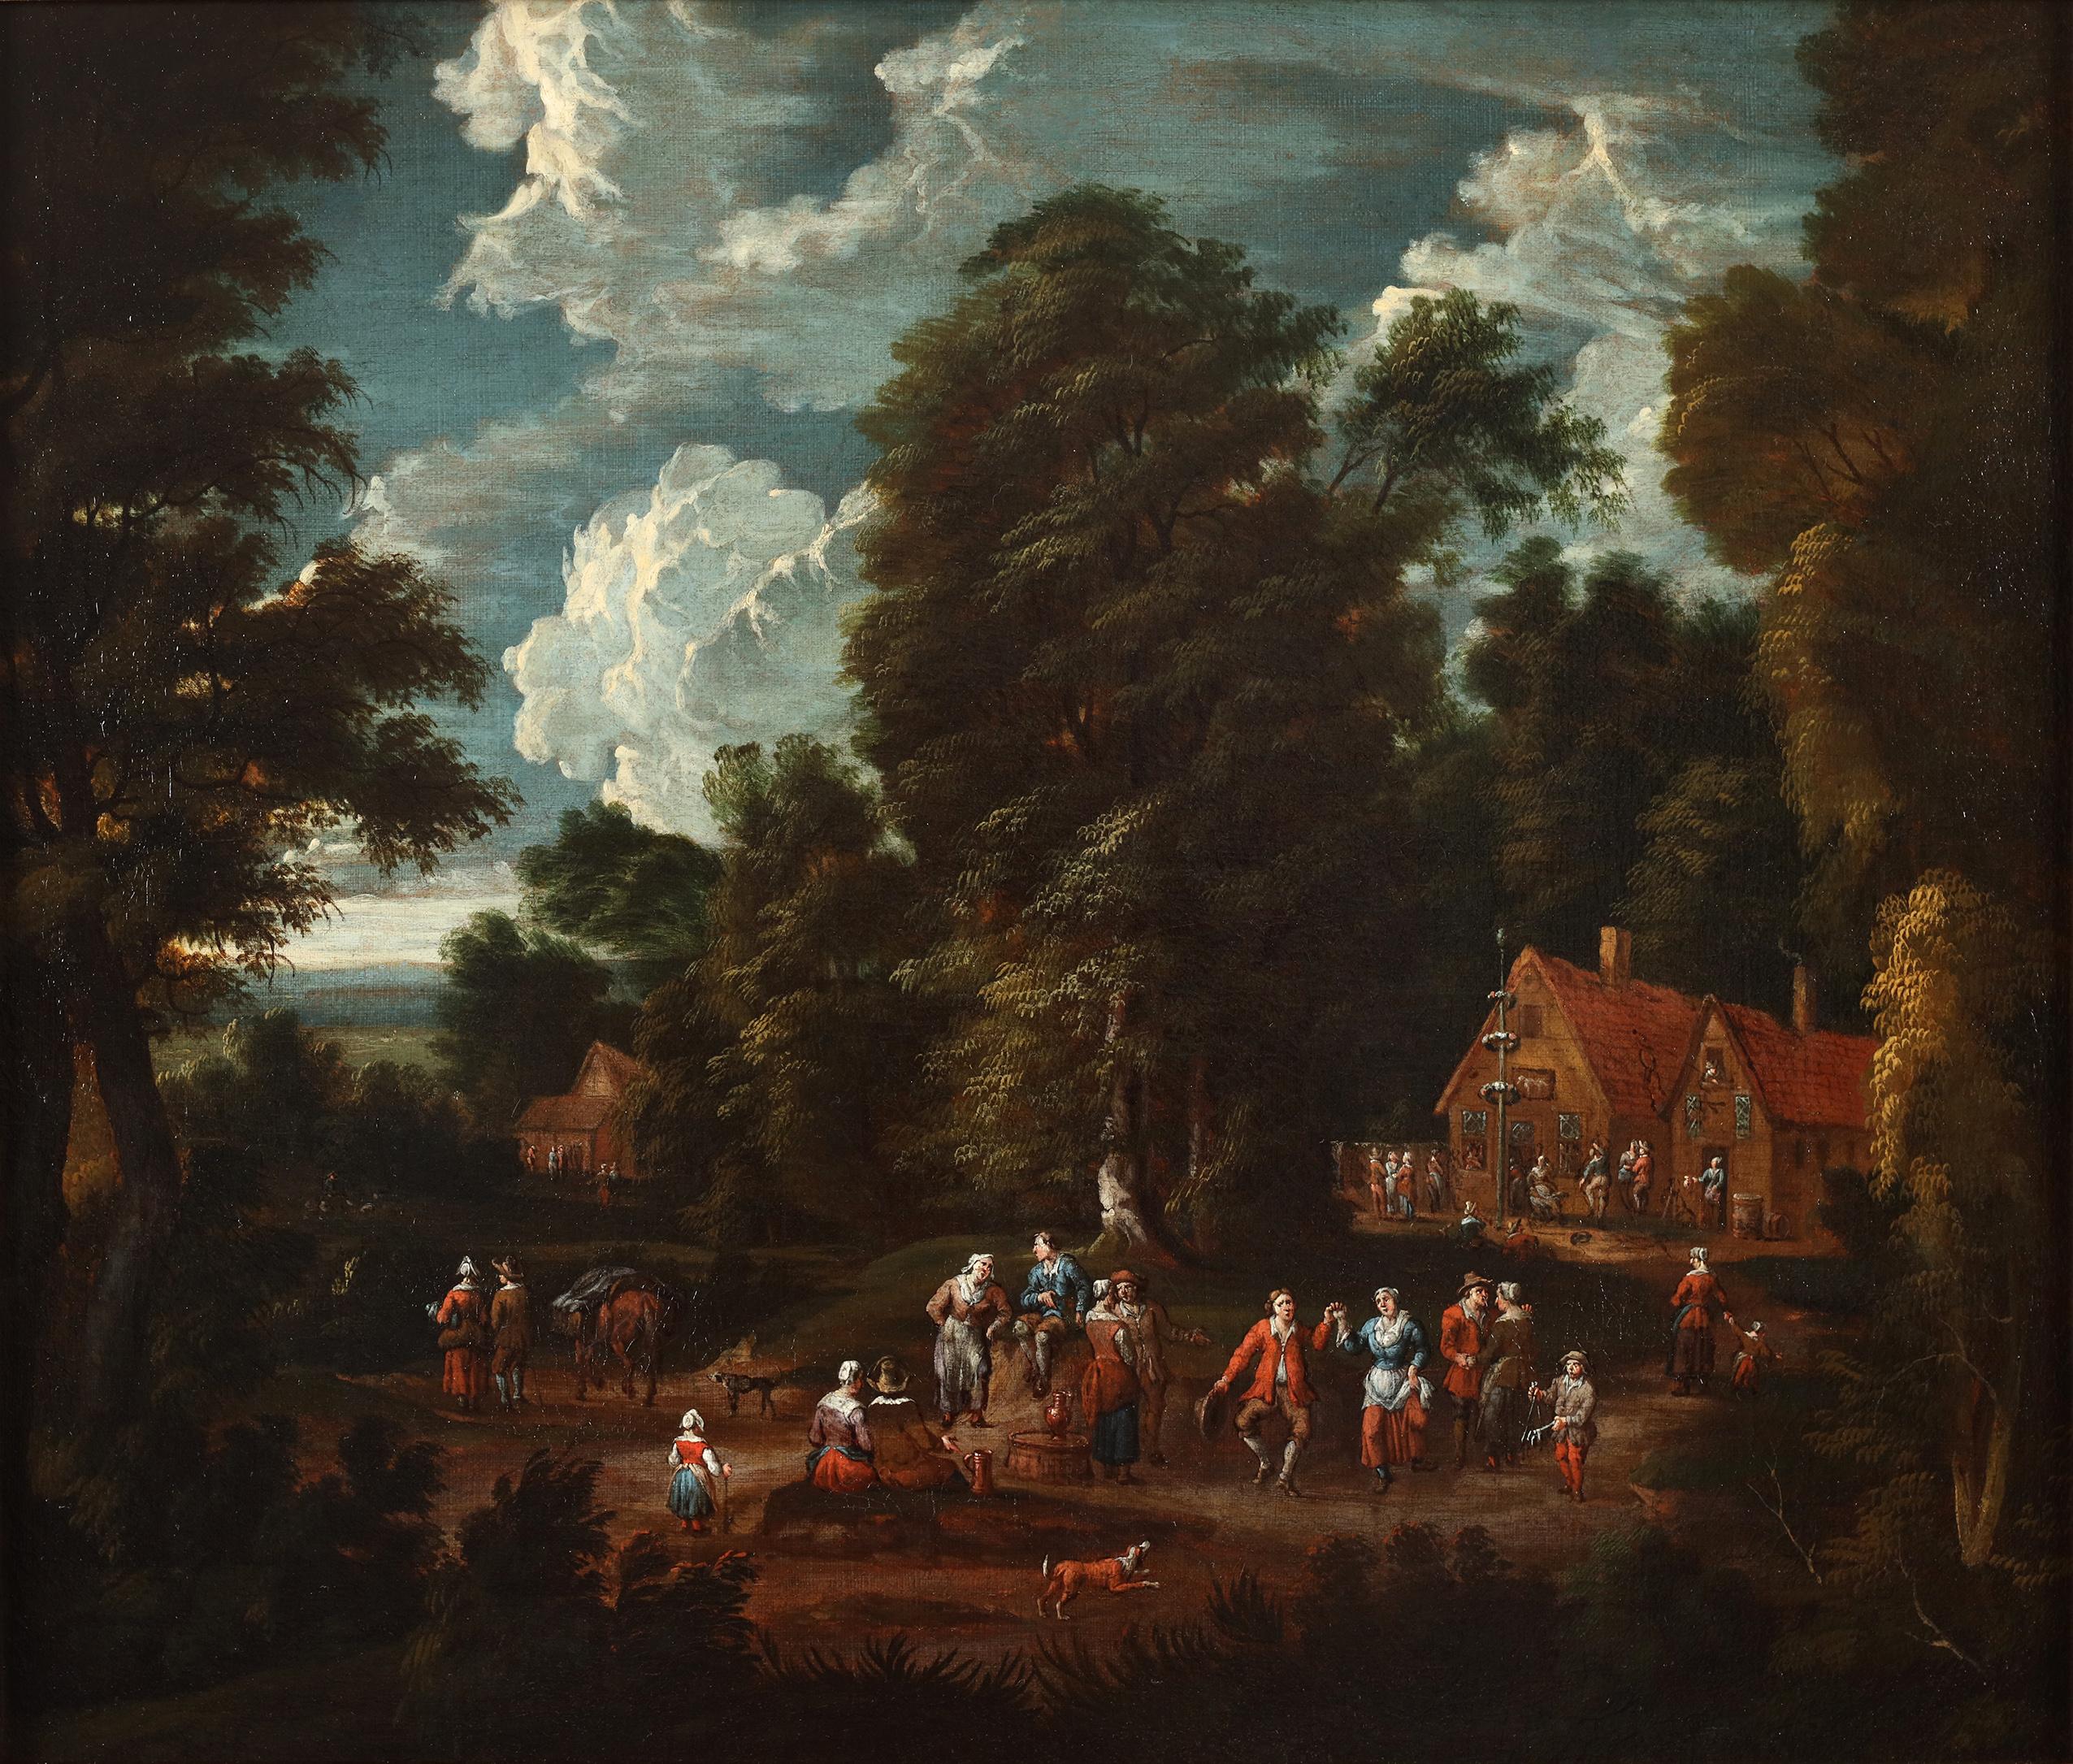 Unknown Landscape Painting - The Village Kermis - 17th century Flemish School